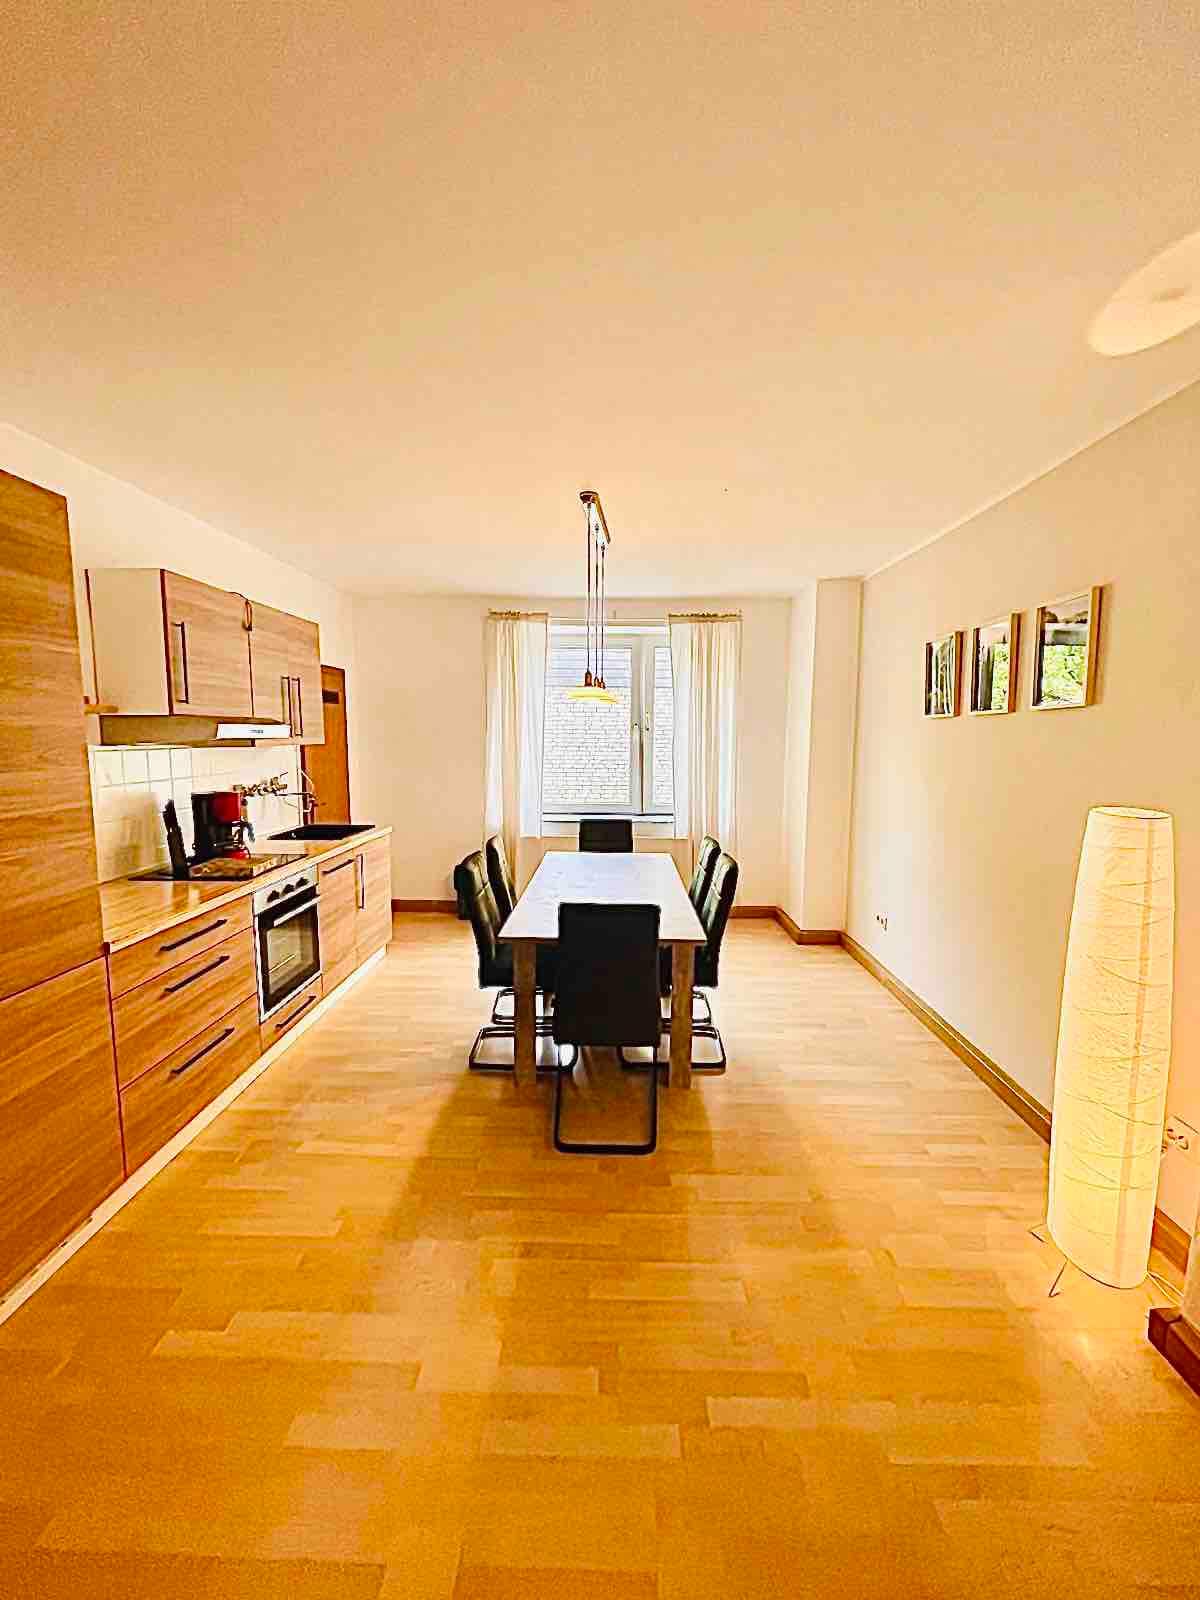 Zentrale Airbnb: Komplette Ausgestattet-Neue Möbel